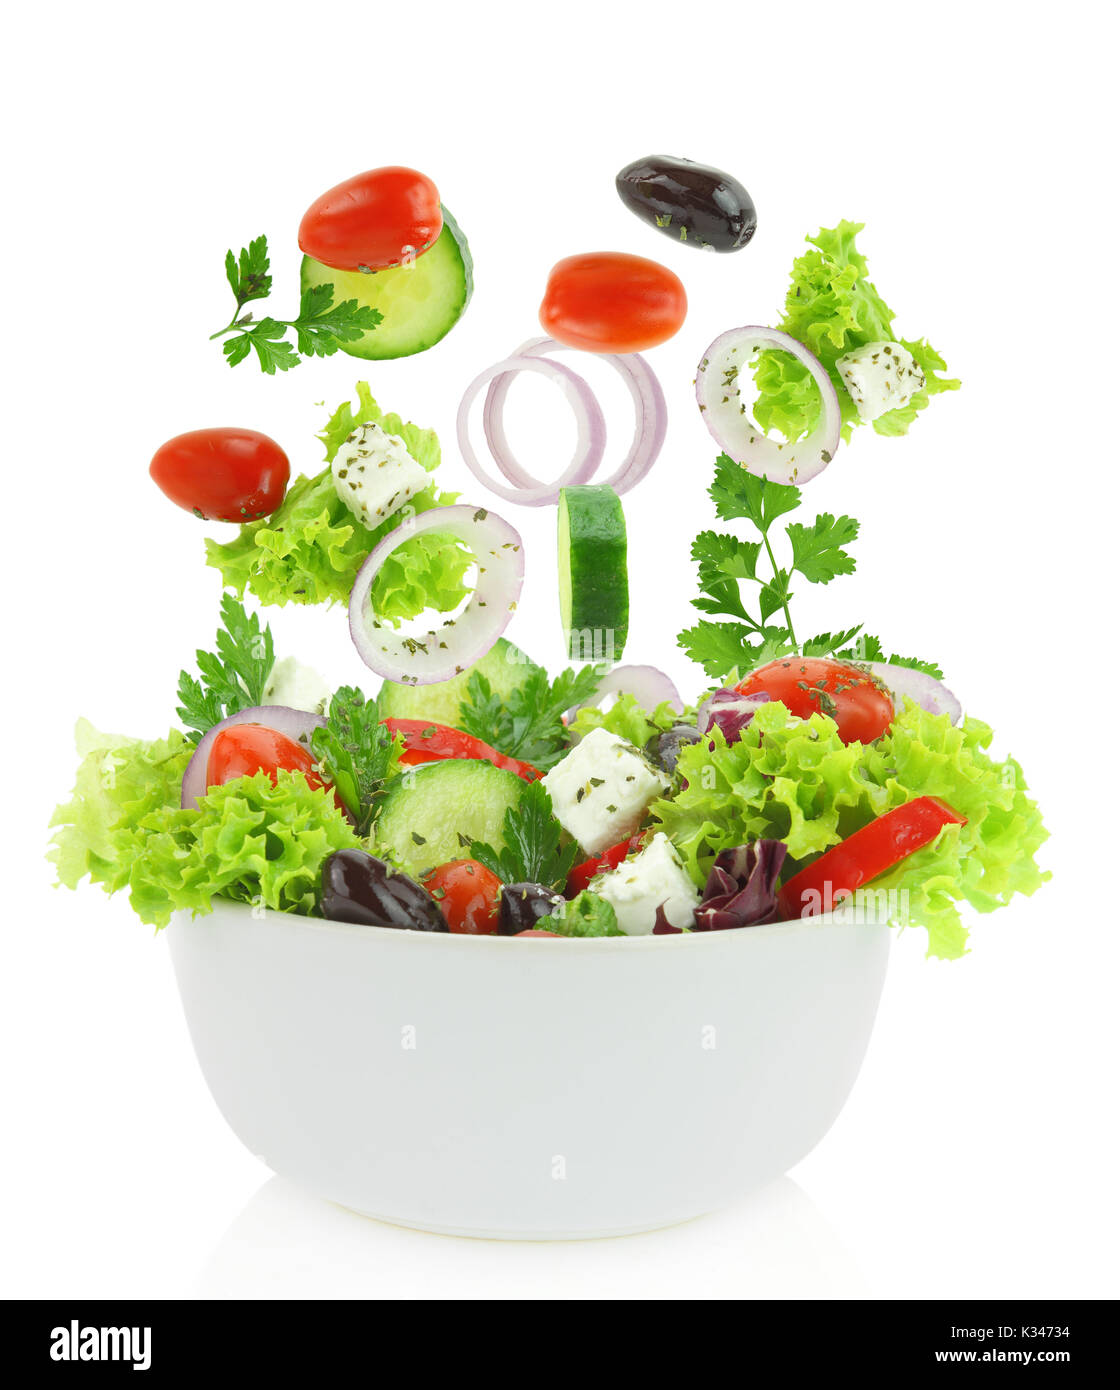 Mélange de légumes frais tomber dans un bol de salade Banque D'Images